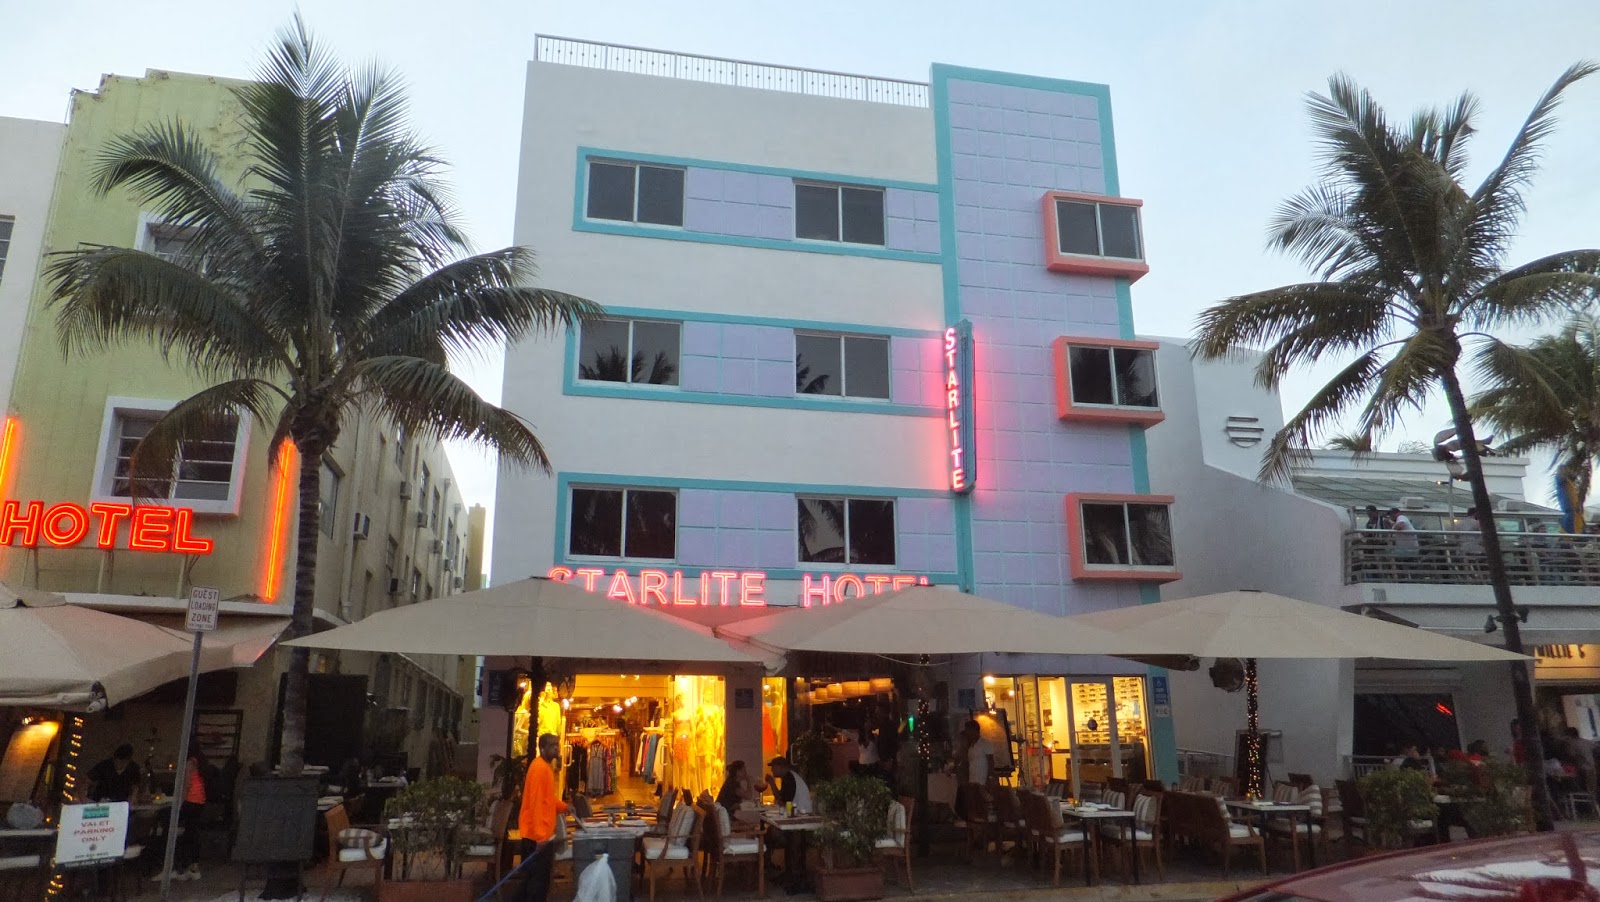 Starlite Hotel, Distrito Art Déco, Miami, Elisa N, Blog de Viajes